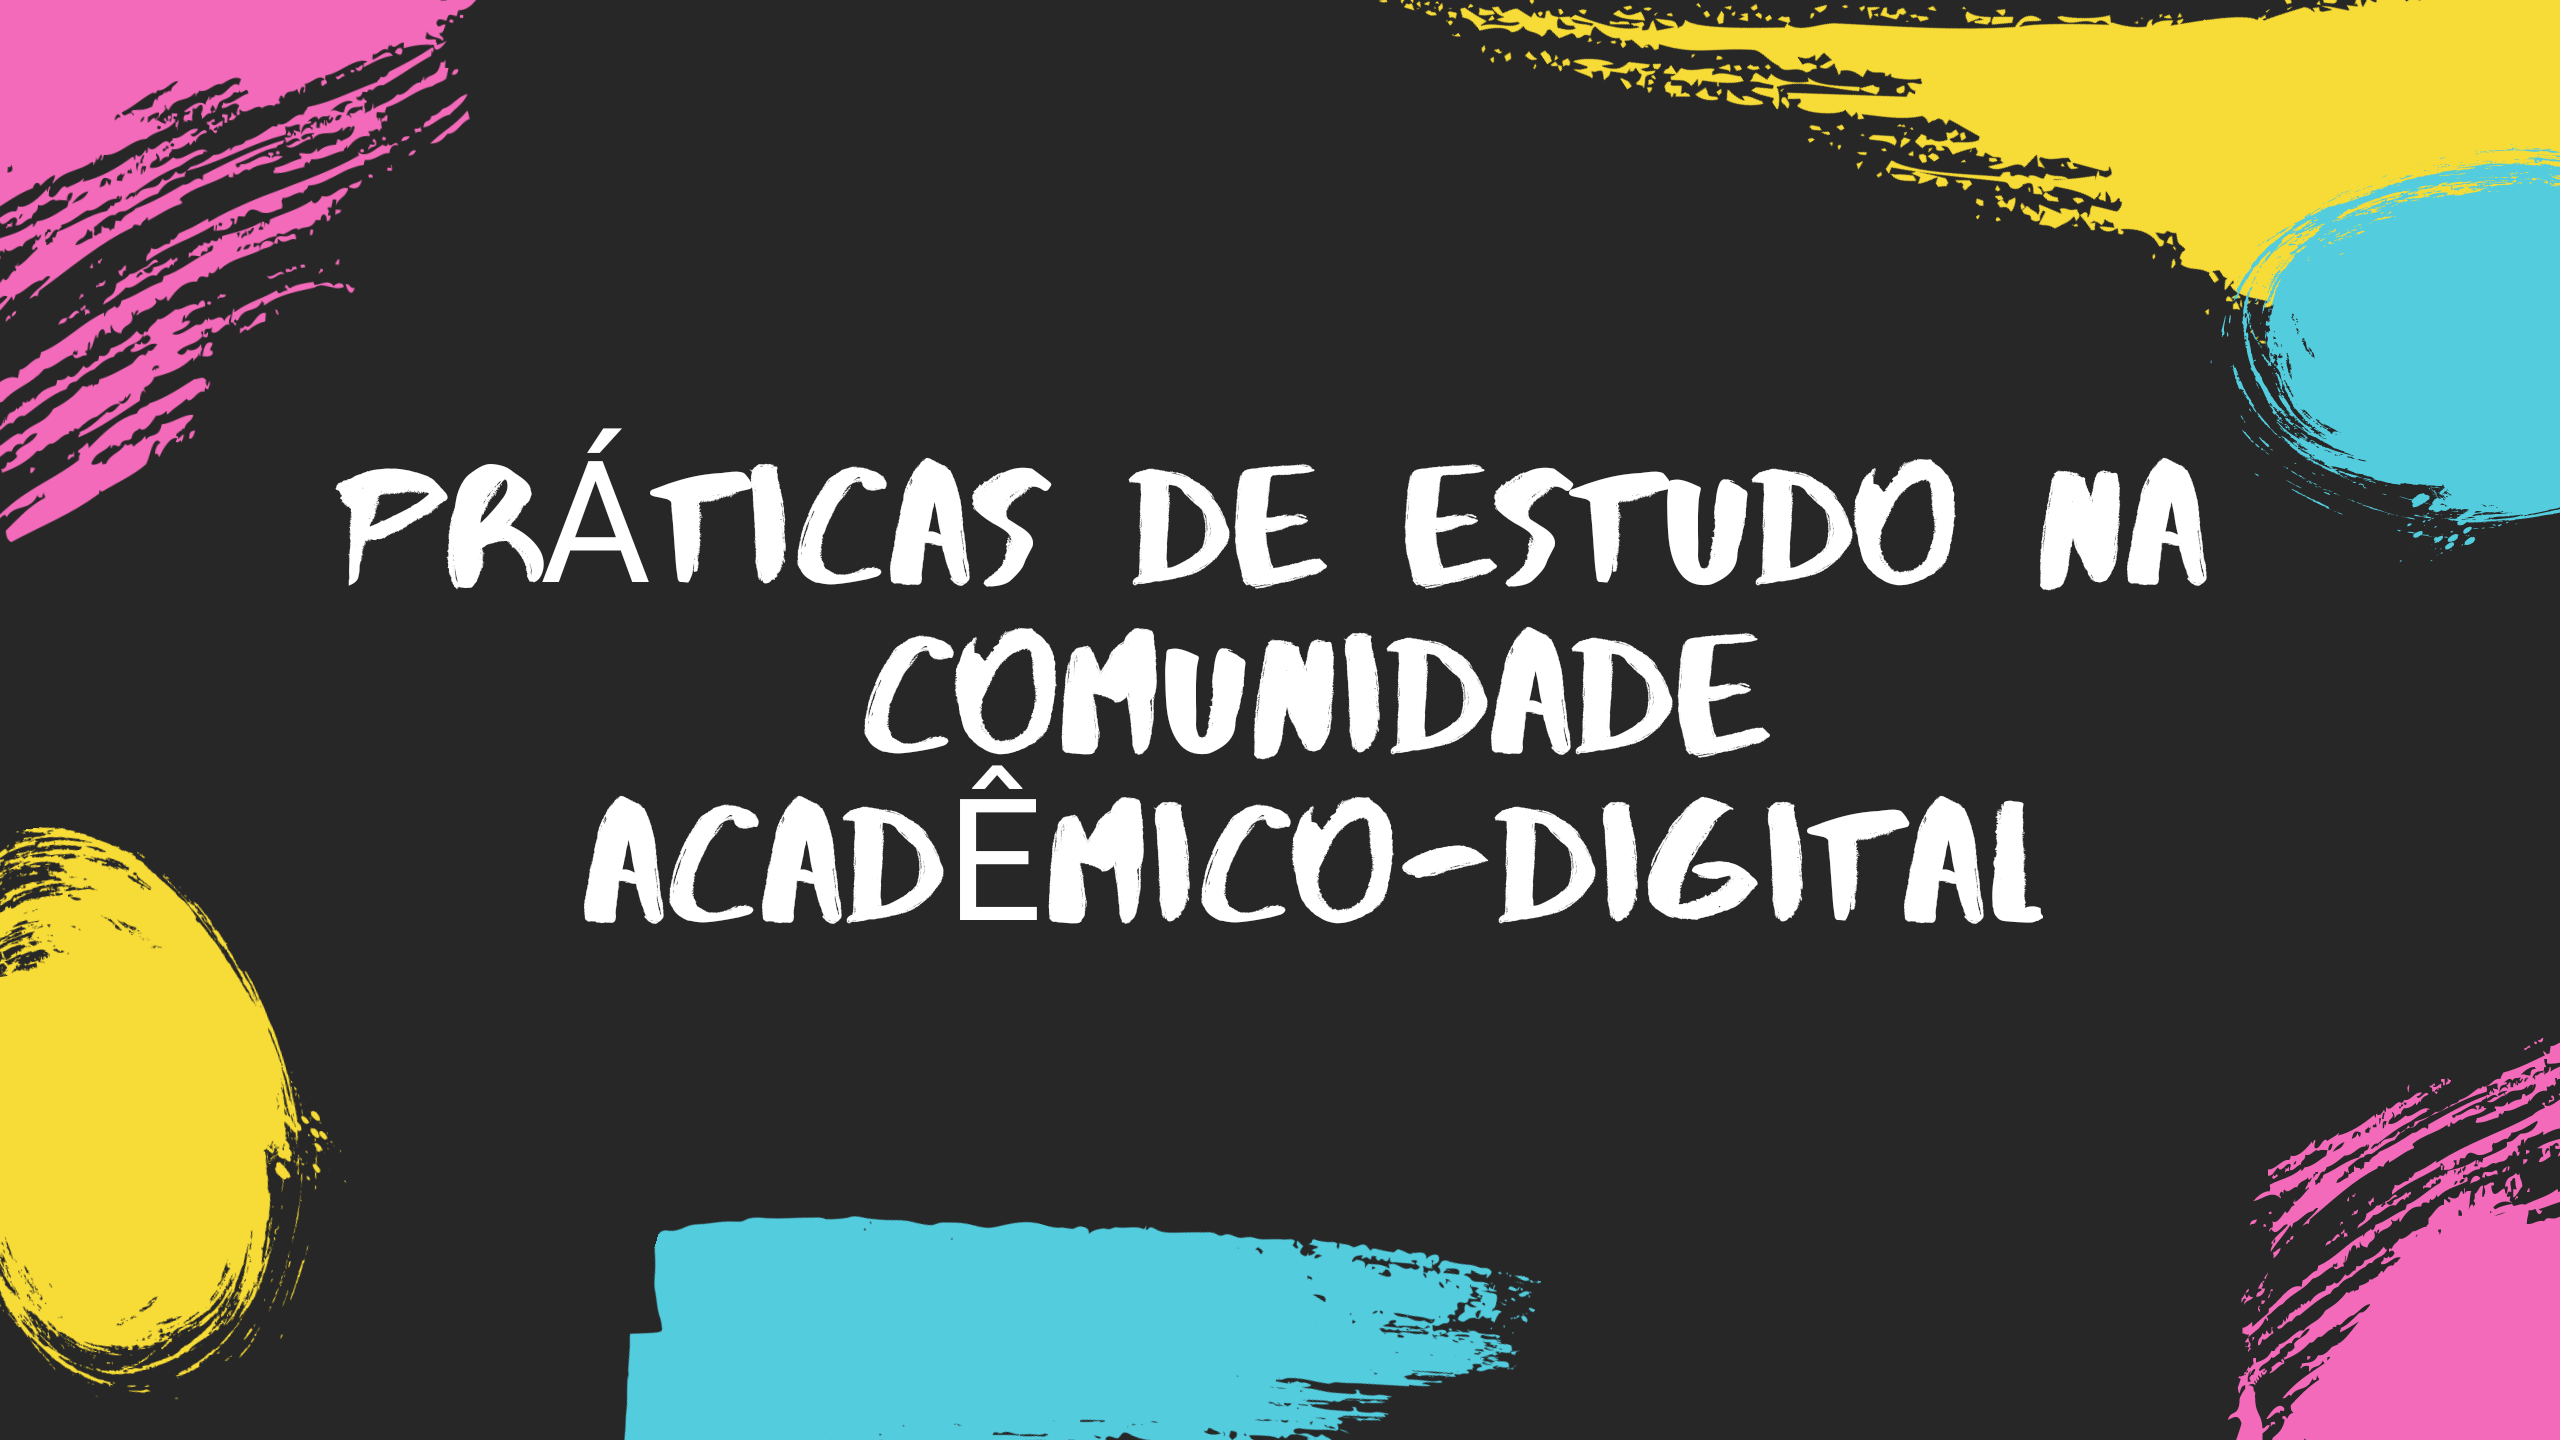 Práticas de Estudo na Comunidade Acadêmico-Digital